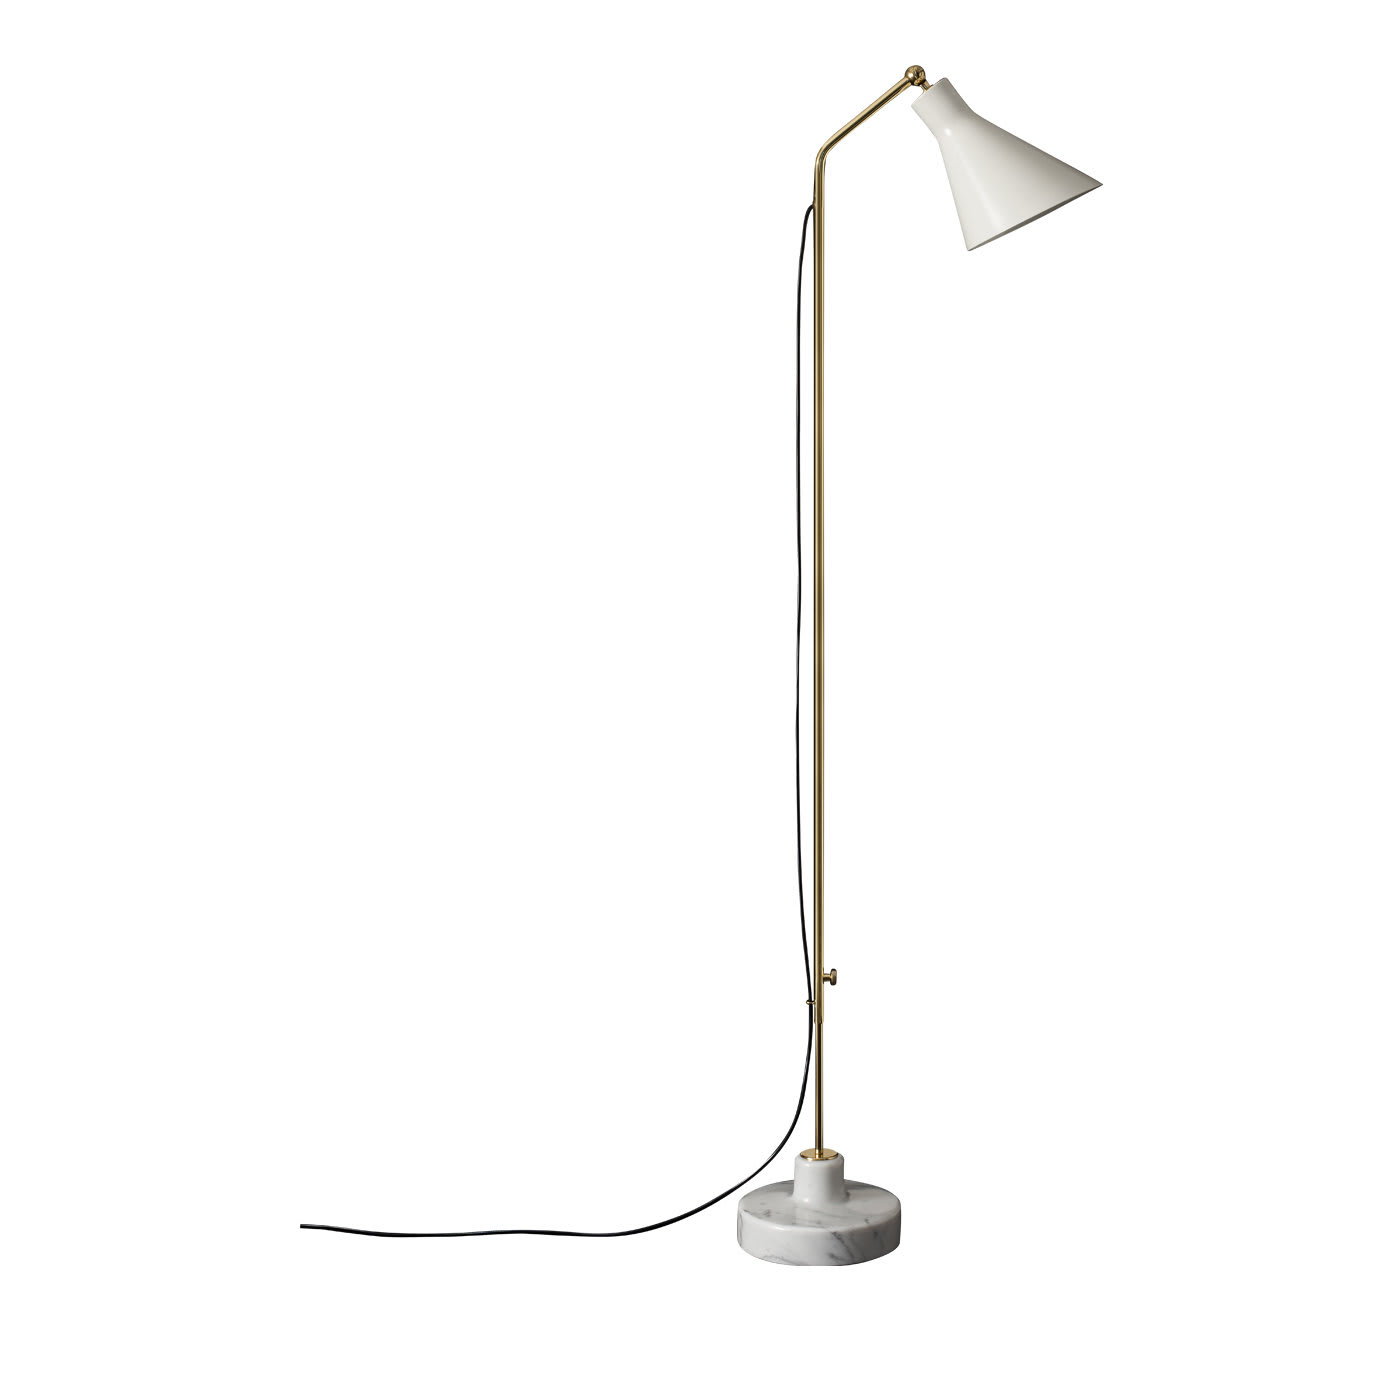 Alzabile Adjustable Lamp by Ignazio Gardella - Tato